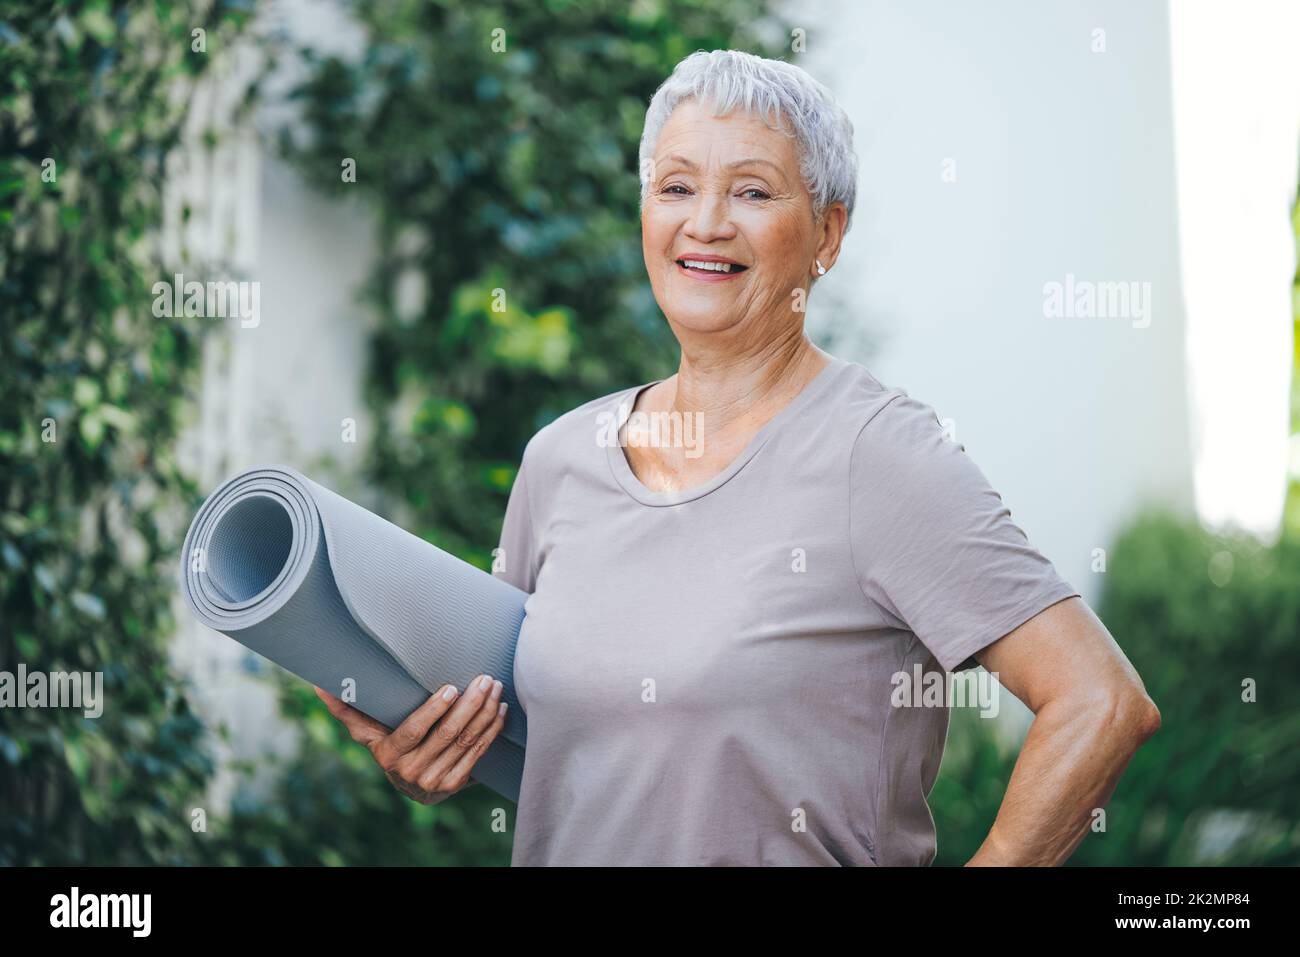 Fitness ist ein Lebensstil. Porträt einer älteren Frau, die vor ihrem Training im Freien eine Trainingsmatte in der Hand hält. Stockfoto